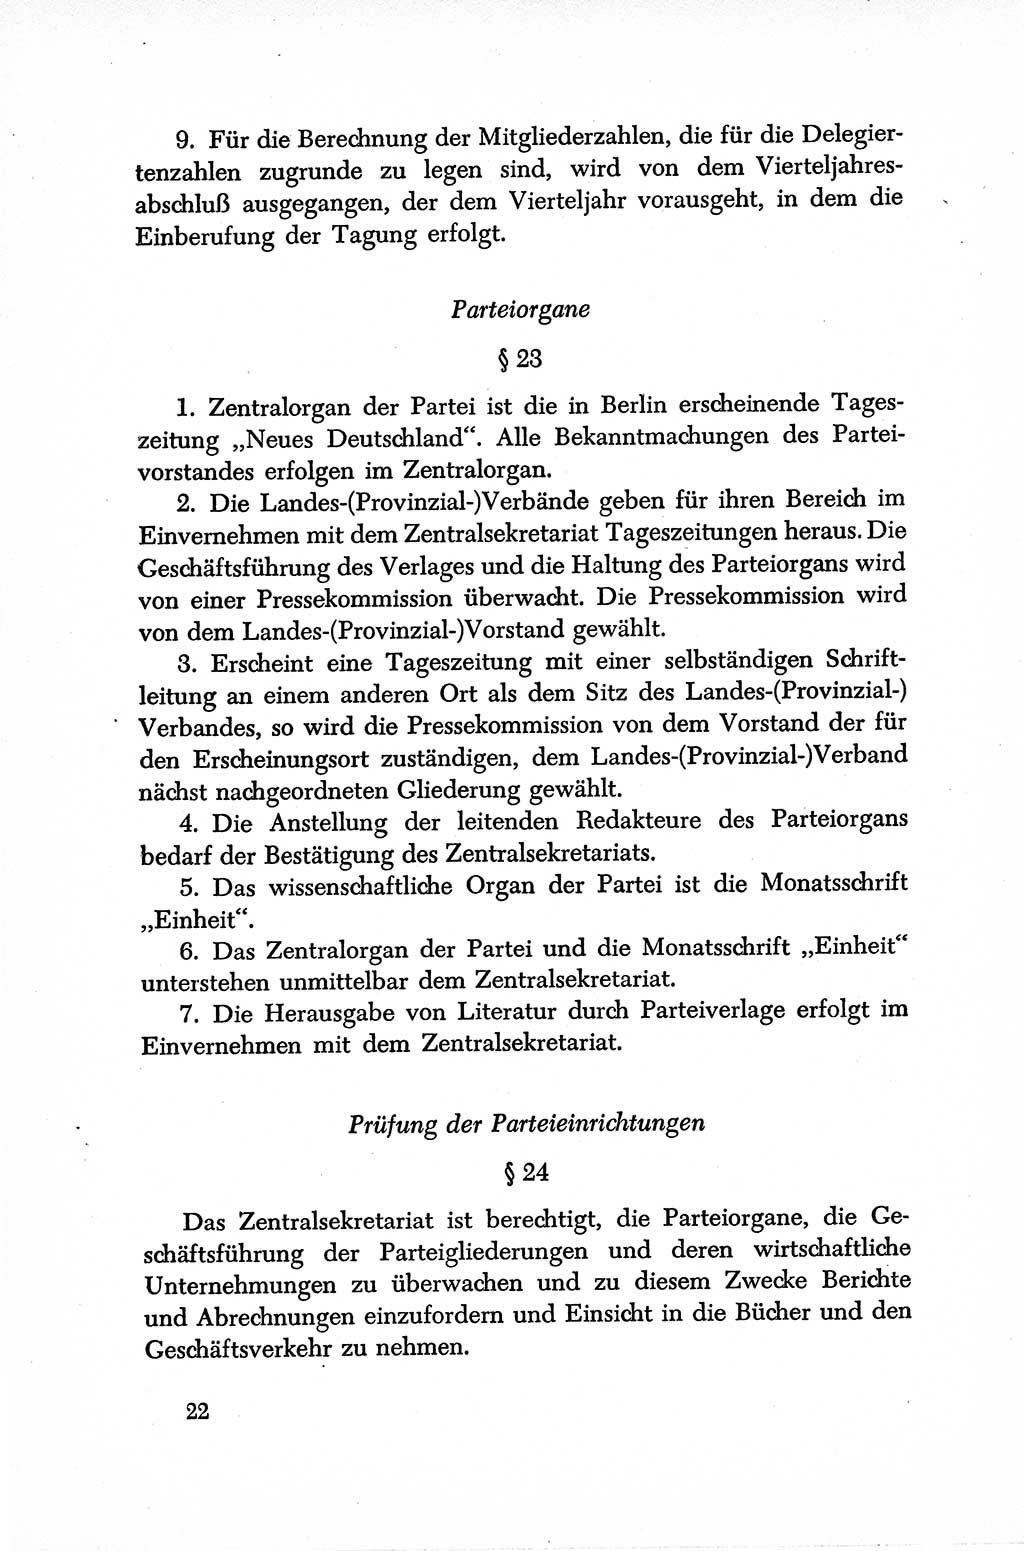 Dokumente der Sozialistischen Einheitspartei Deutschlands (SED) [Sowjetische Besatzungszone (SBZ) Deutschlands] 1946-1948, Seite 22 (Dok. SED SBZ Dtl. 1946-1948, S. 22)